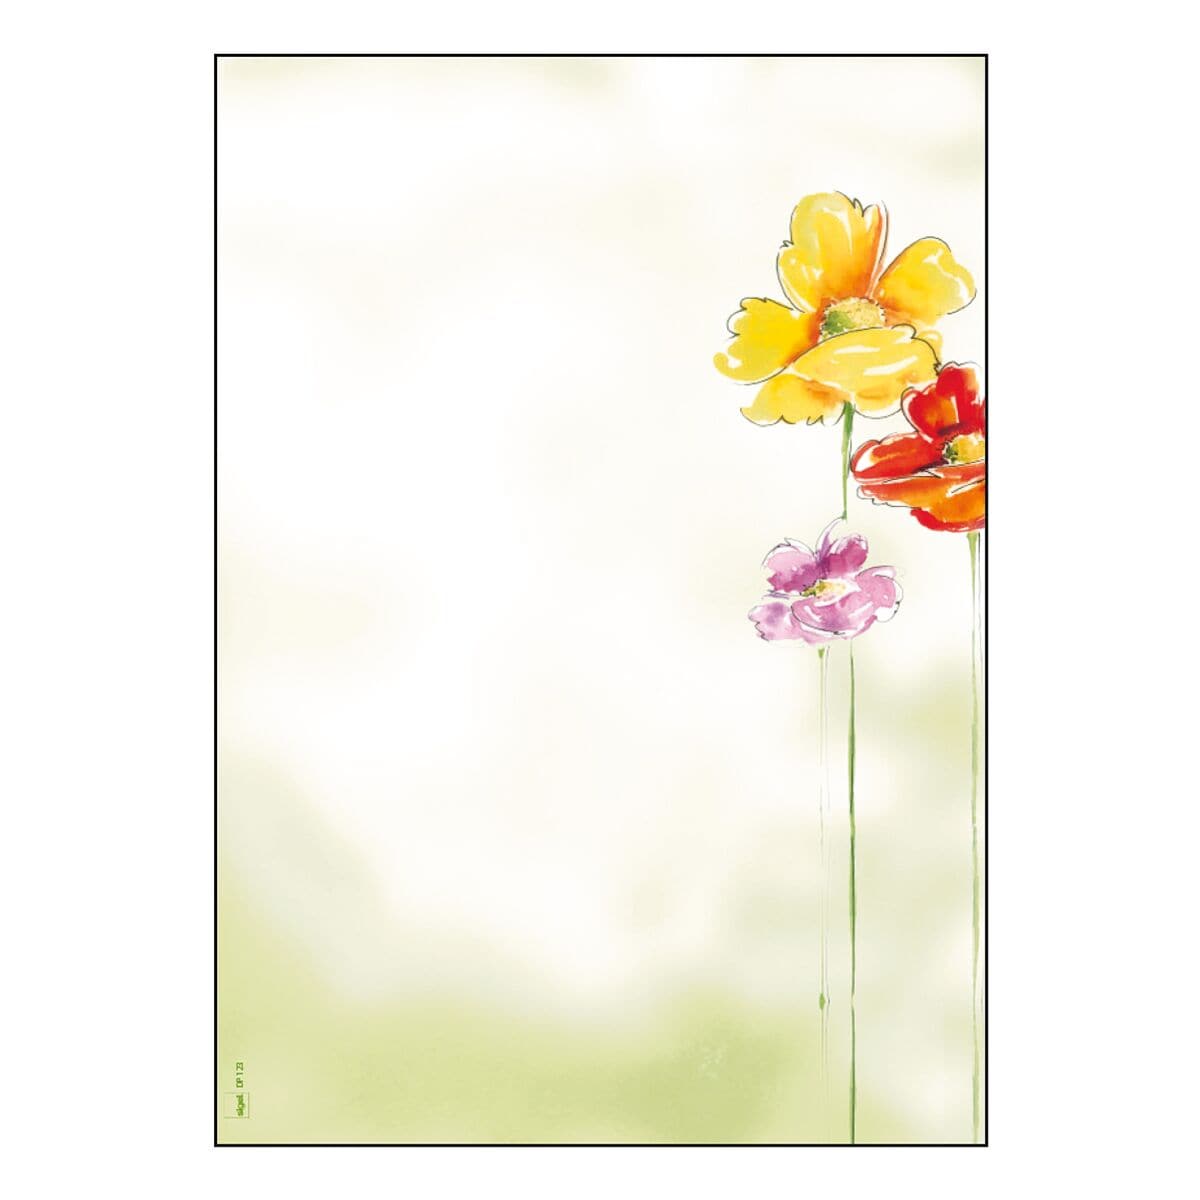 Sigel Motivpapier Spring Flowers DP123